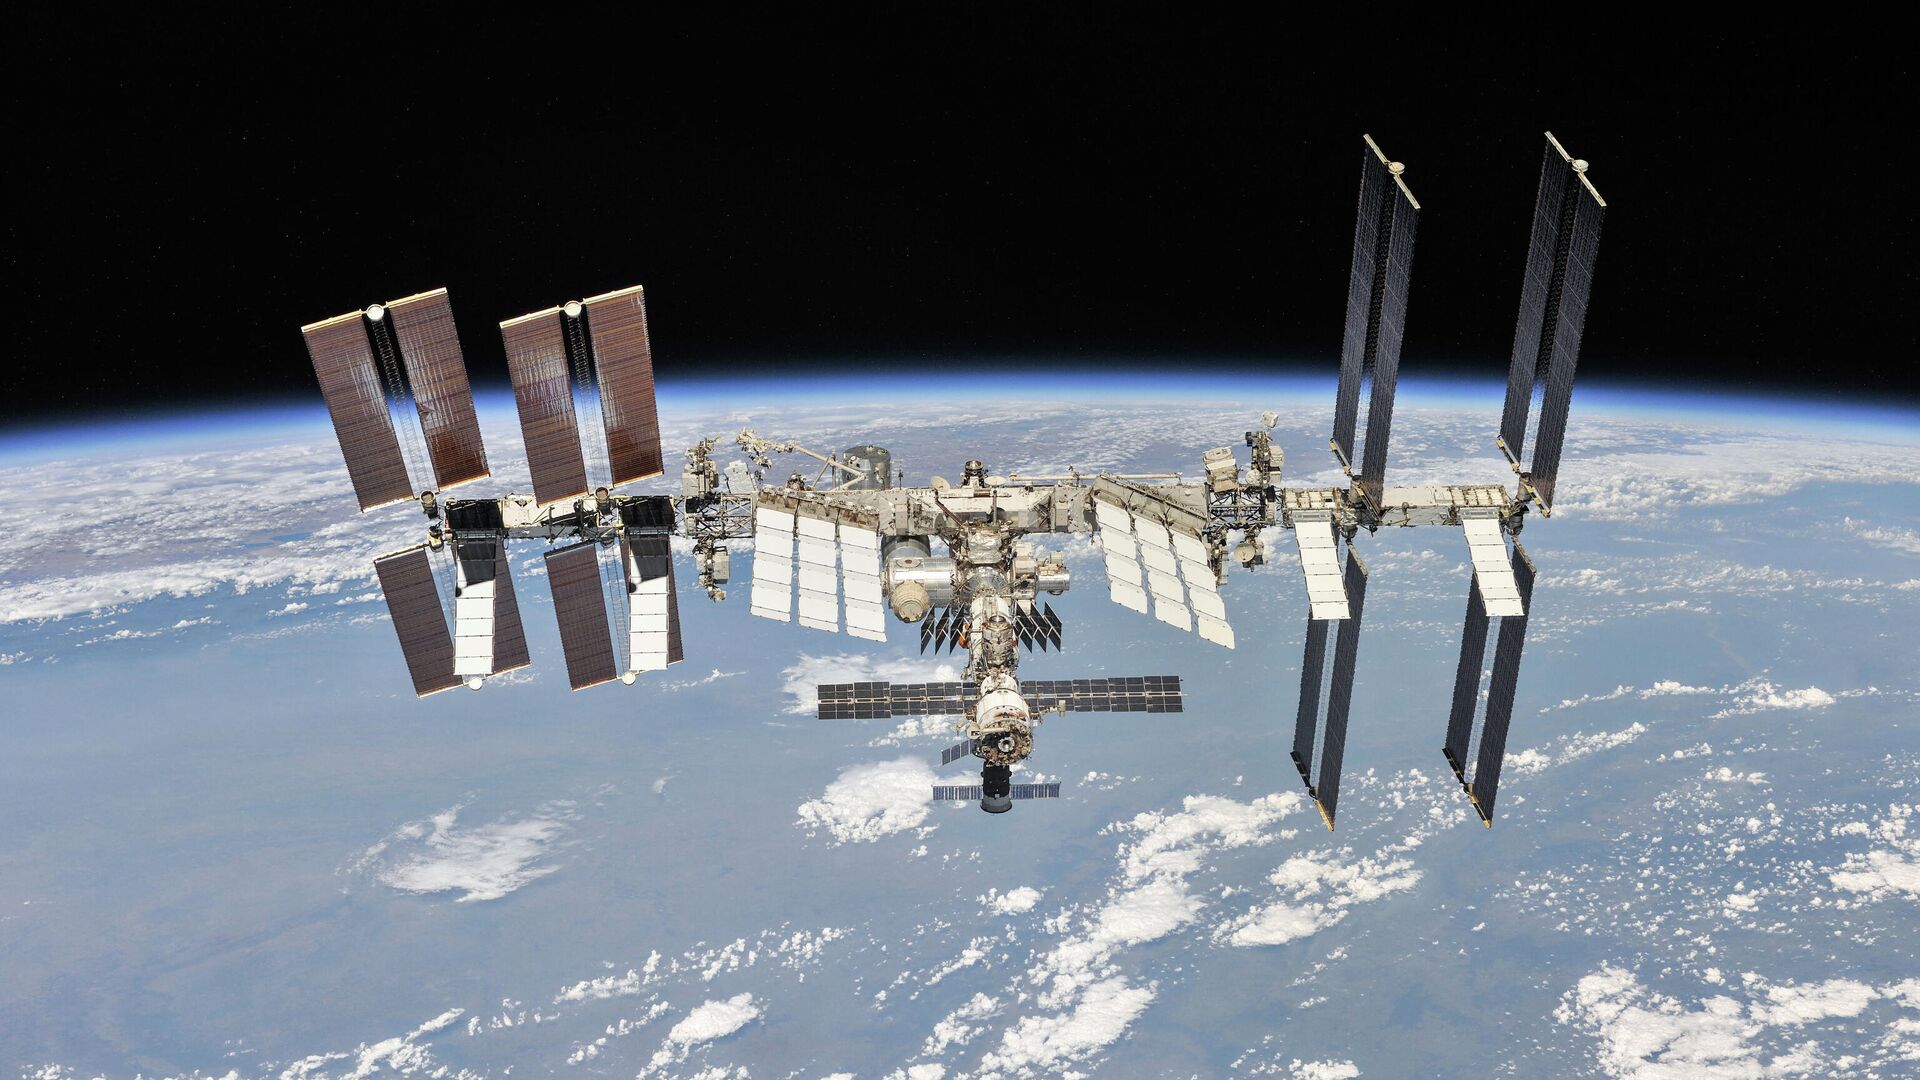 Международная космическая станция, сфотографированная членами экипажа 56-й экспедиции с космического корабля «Союз», 4 октября 2018 года - Sputnik Азербайджан, 1920, 31.12.2022